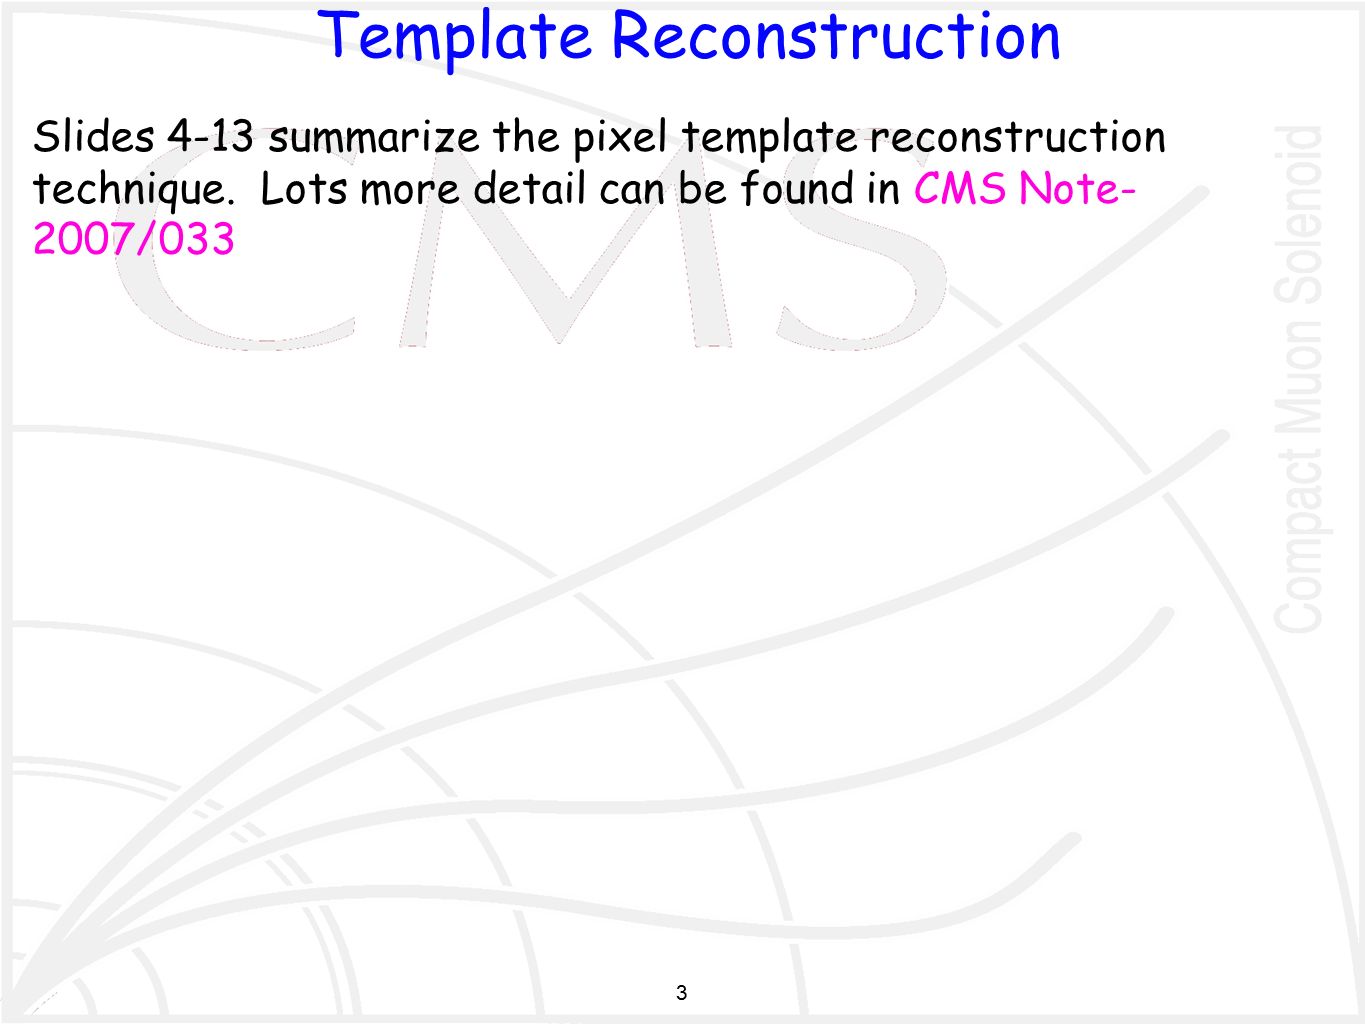 3 Slides 4-13 summarize the pixel template reconstruction technique.